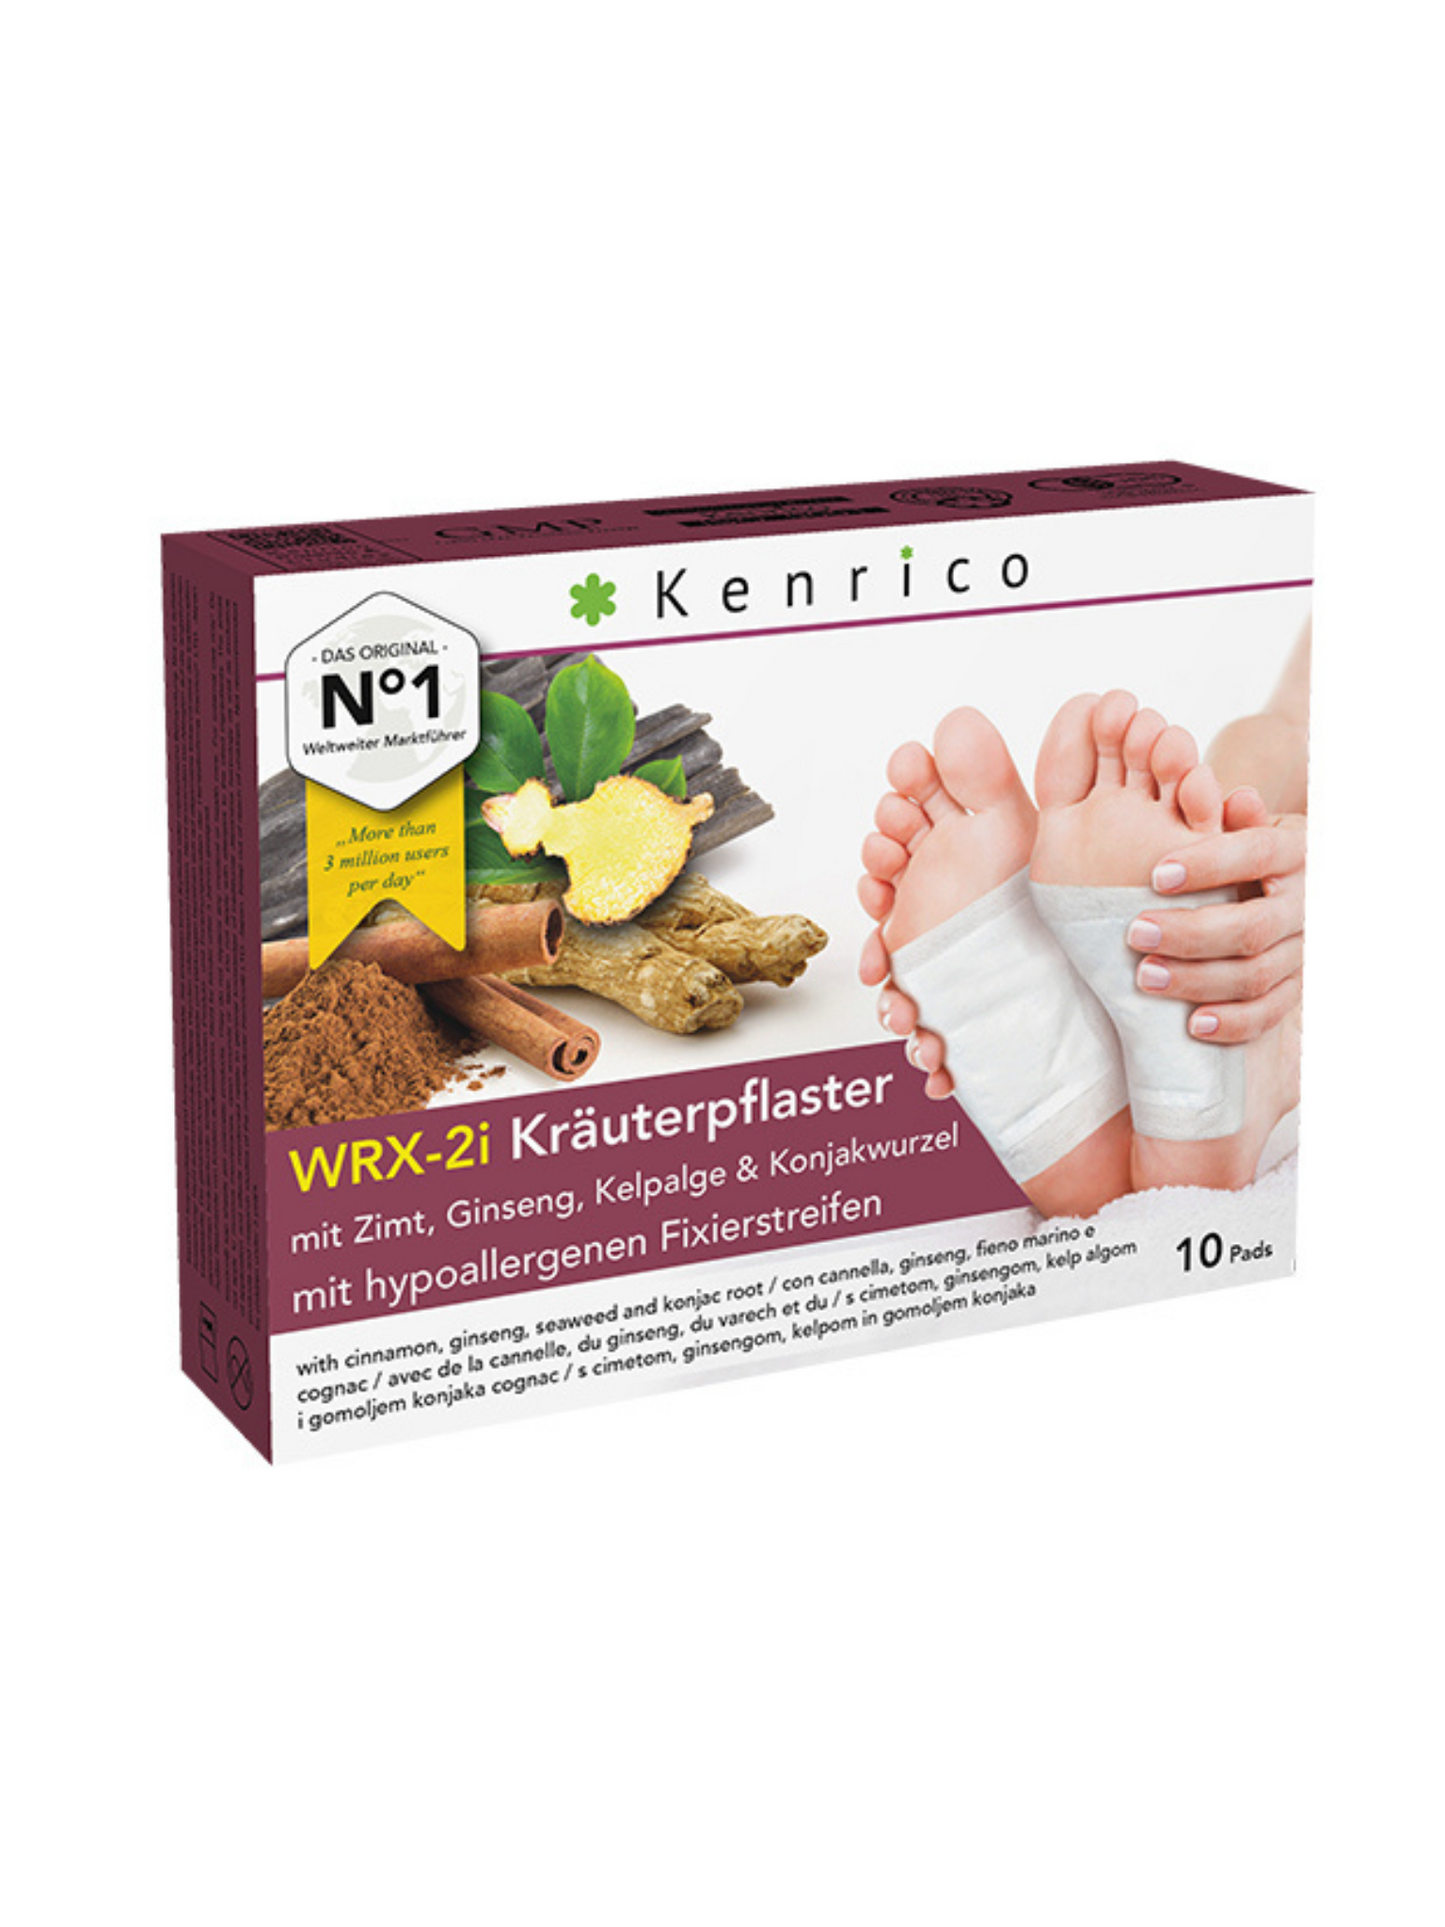 Kenrico® WRX-2i Kräuterpflaster mit Zimt, Ginseng, Kelpalge & Konjakwurzel